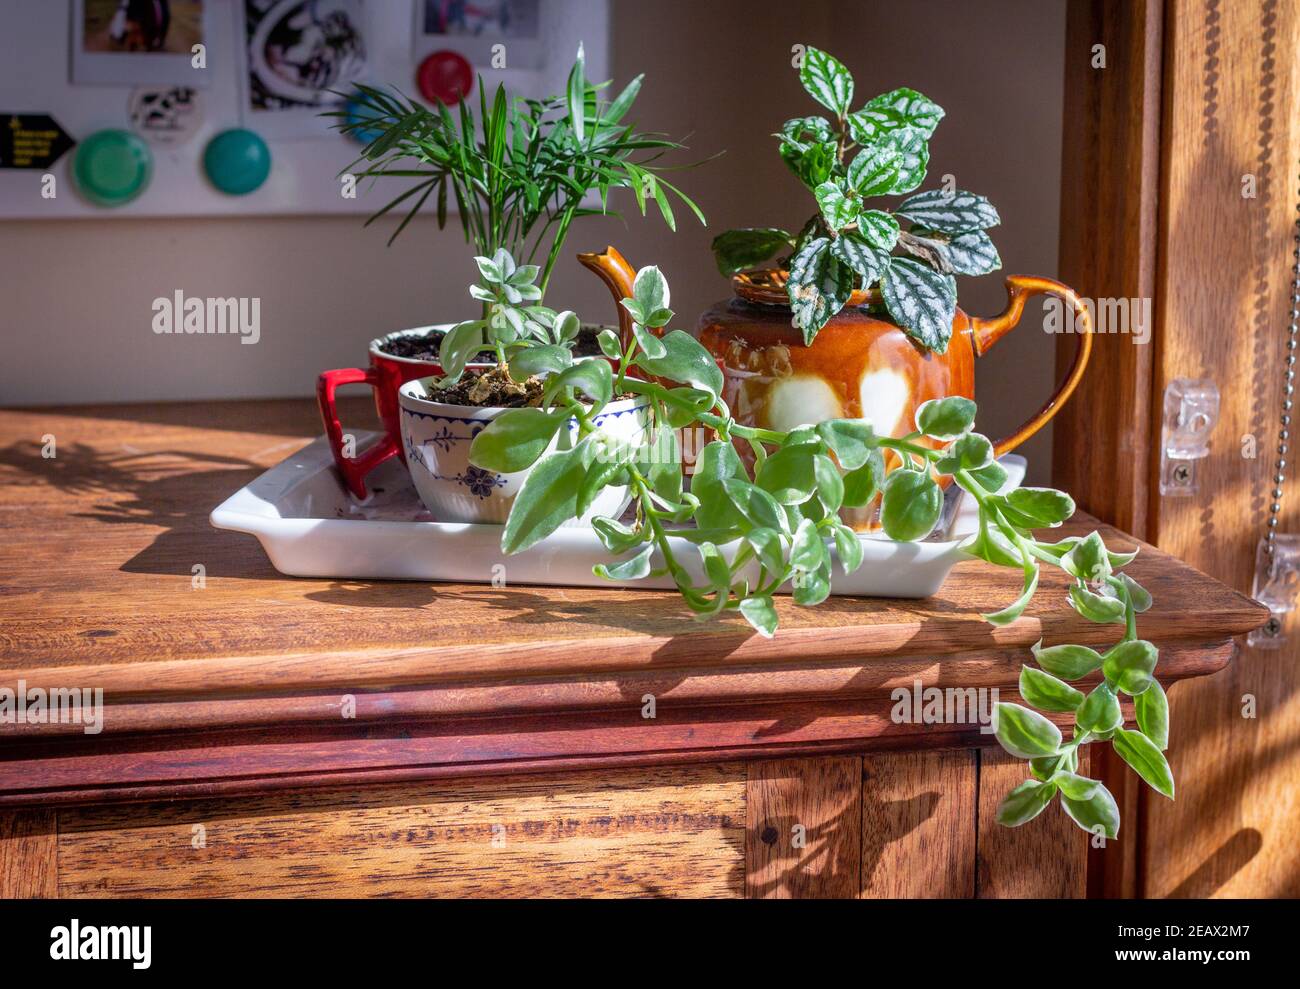 plantes de maison cultivées dans des tasses recyclées, mug et théière sur un plateau près d'une fenêtre ensoleillée, recycler, réutiliser, cycle de mise en valeur pour une vie durable Banque D'Images